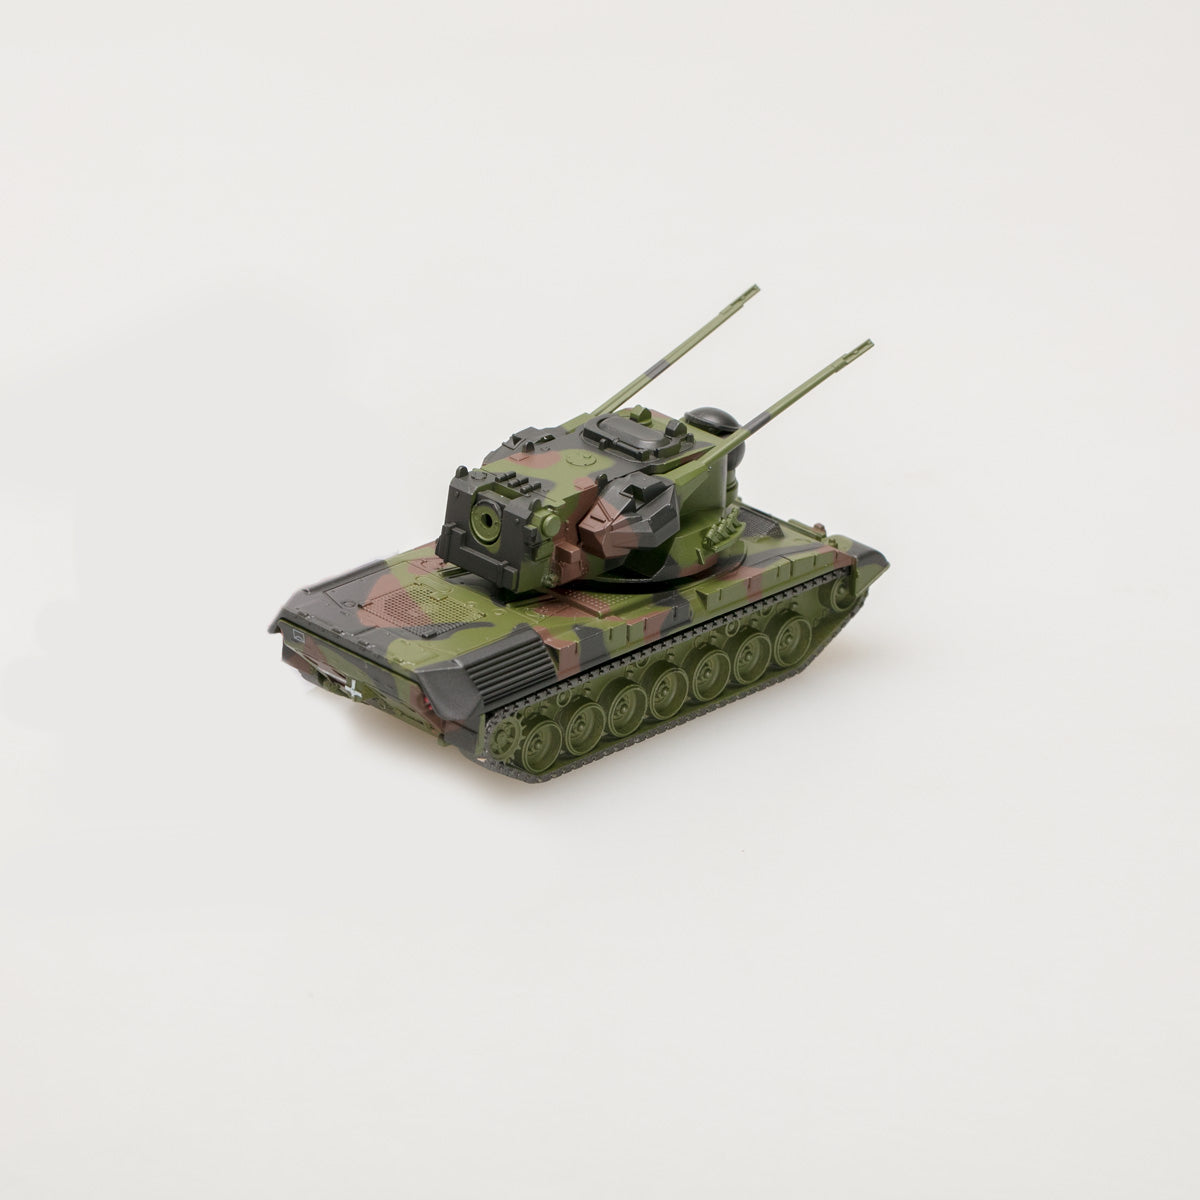 Schuco 1:87 Gepard Flakpanzer Bundeswehr camouflaged 452635500